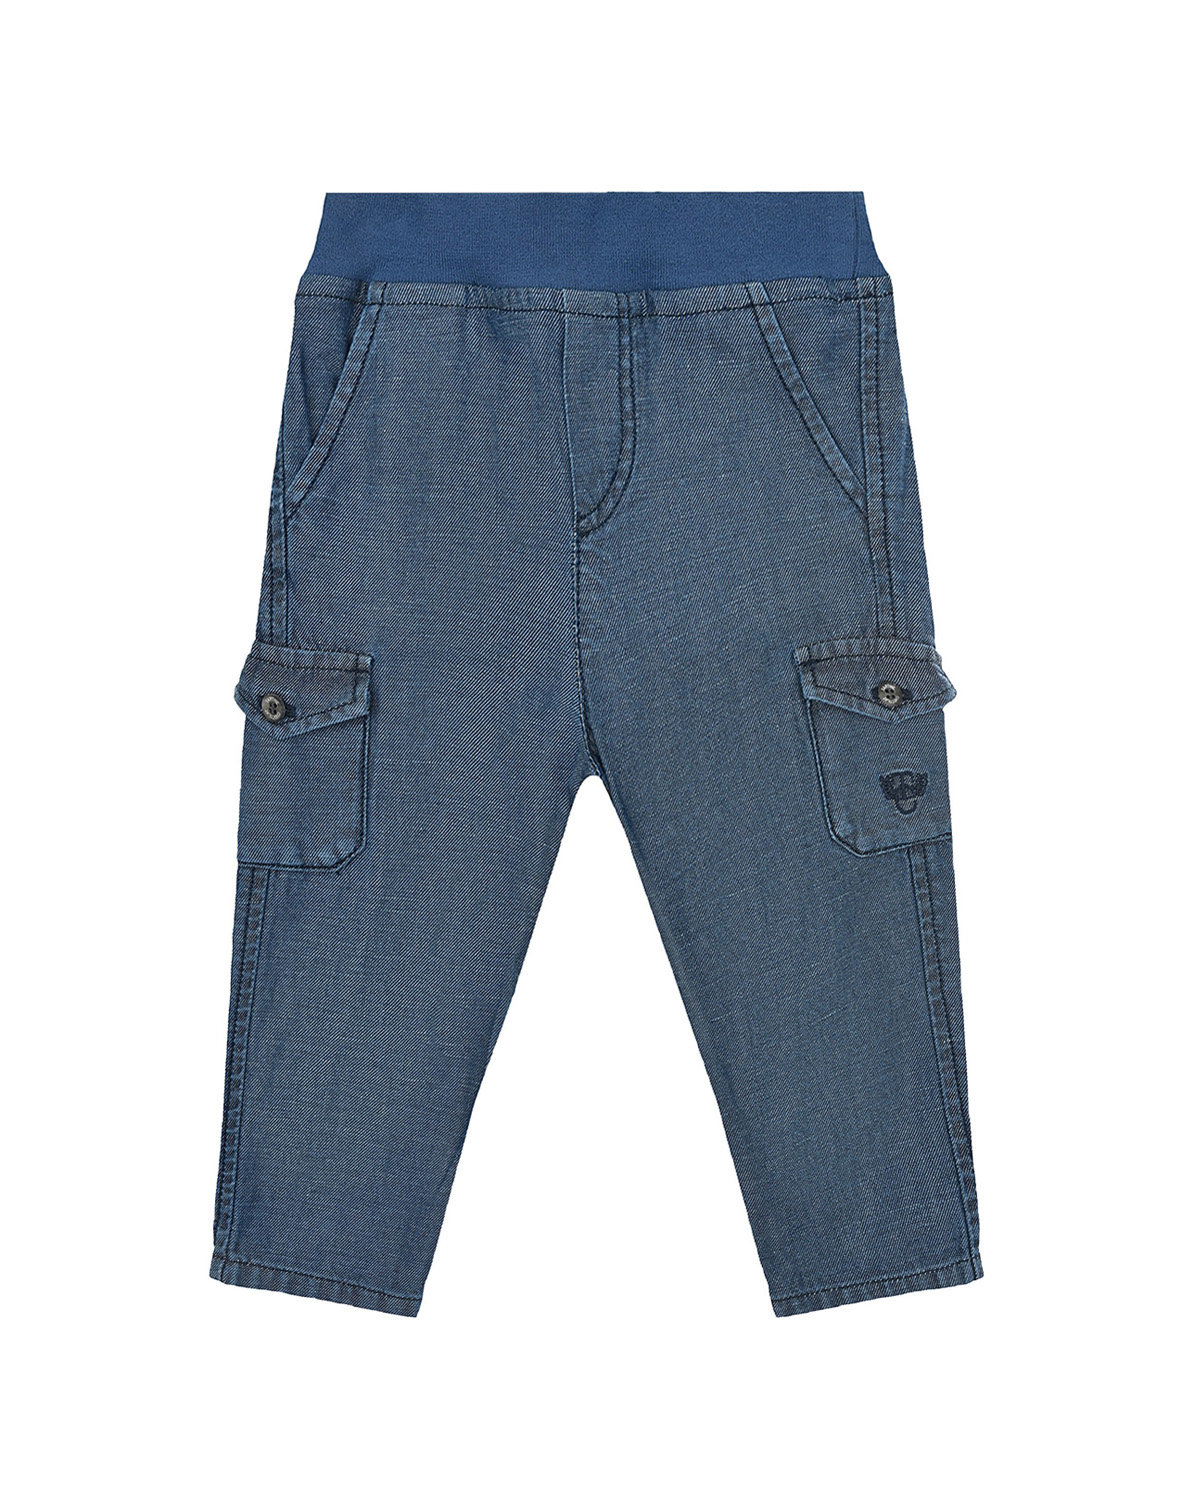 Джинсовые брюки с карманами карго Tartine et Chocolat детские, размер 80, цвет синий - фото 1